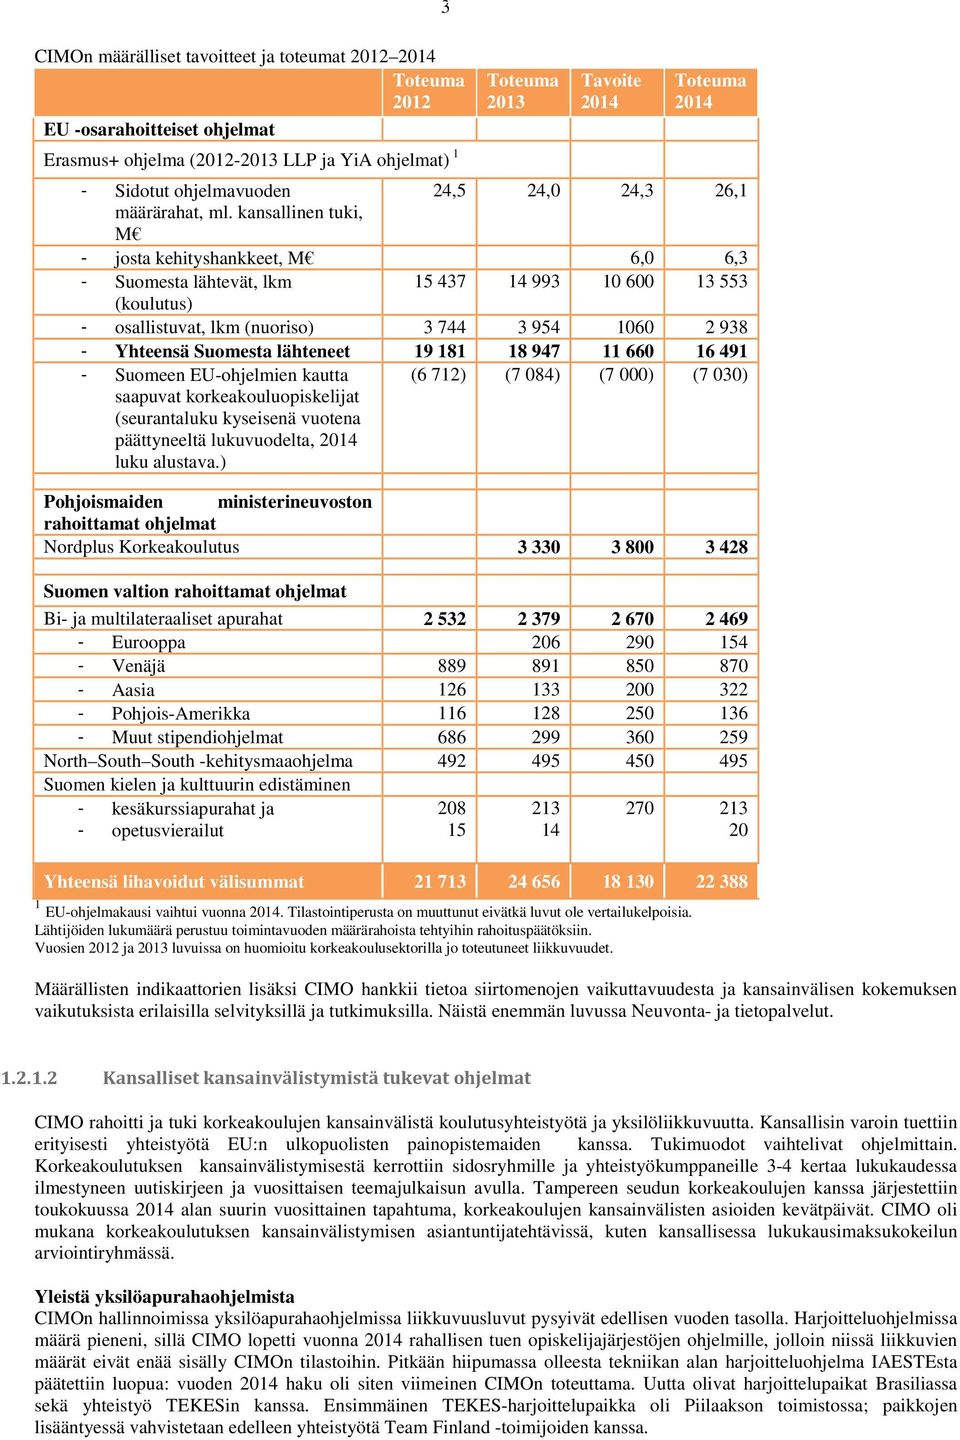 kansallinen tuki, M - josta kehityshankkeet, M 6,0 6,3 - Suomesta lähtevät, lkm 15 437 14 993 10 600 13 553 (koulutus) - osallistuvat, lkm (nuoriso) 3 744 3 954 1060 2 938 - Yhteensä Suomesta